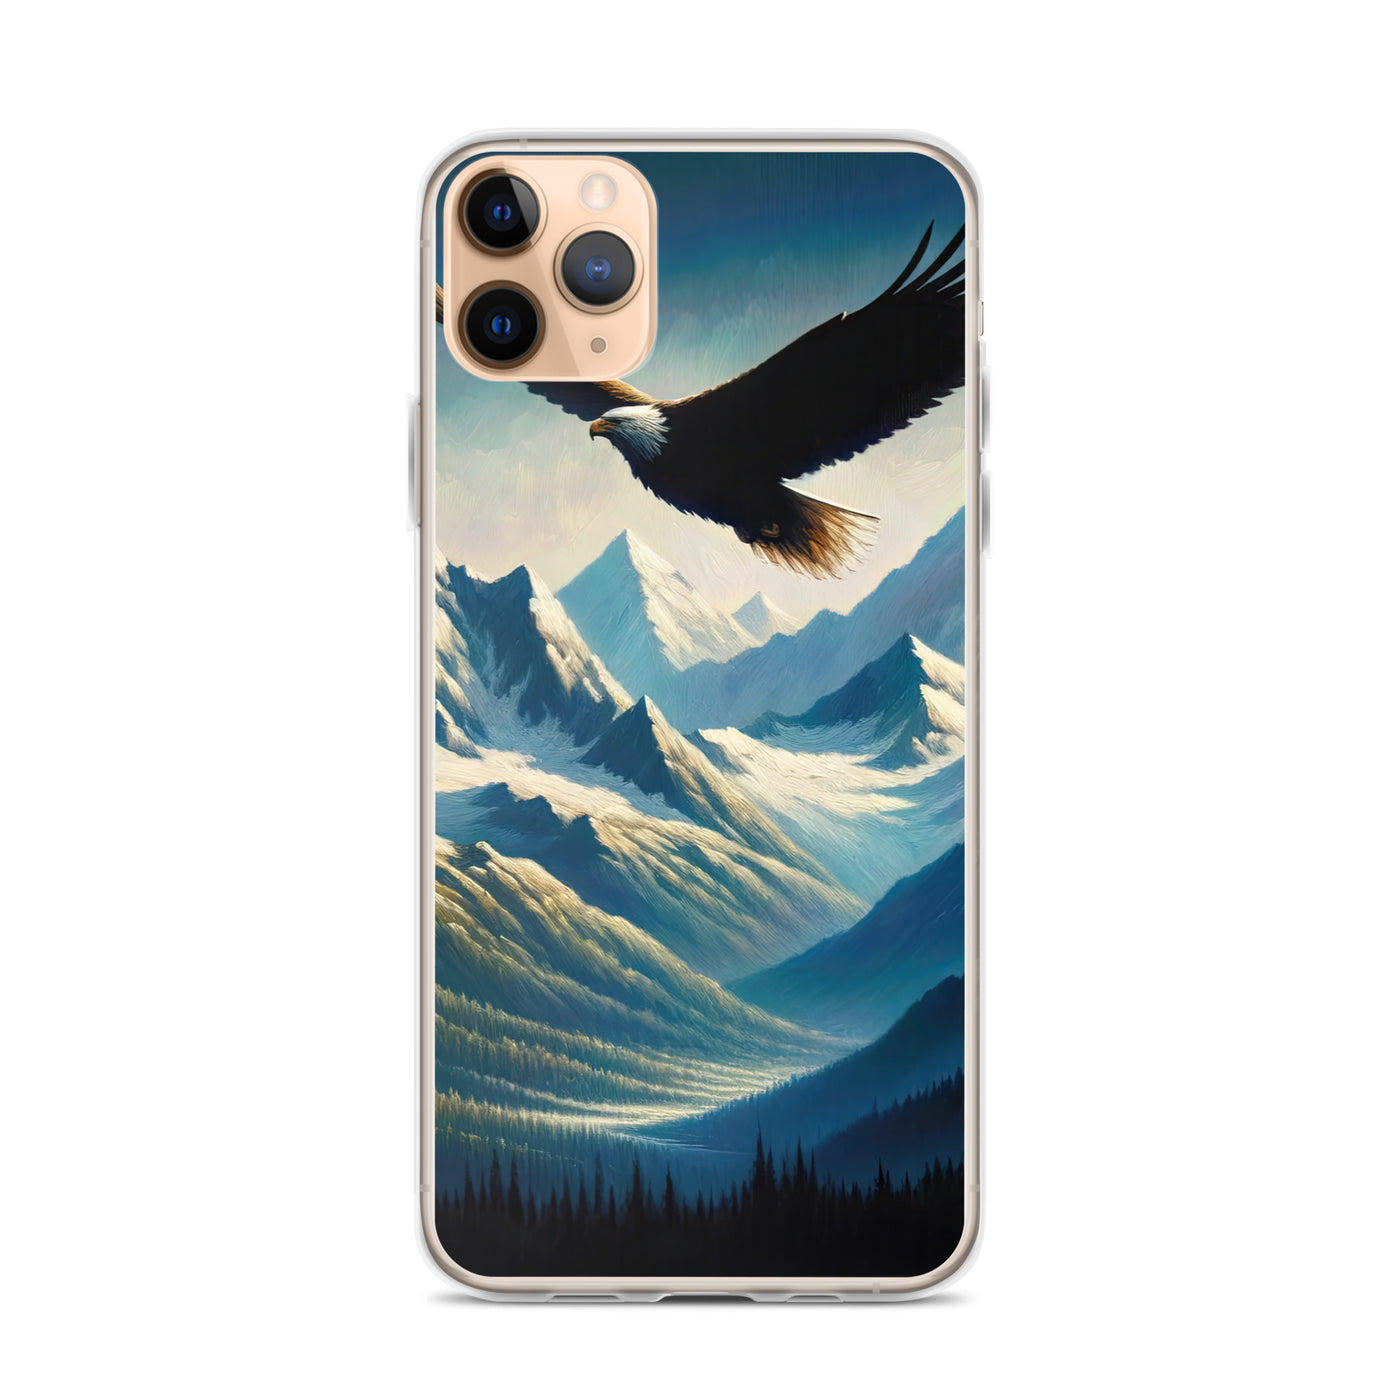 Ölgemälde eines Adlers vor schneebedeckten Bergsilhouetten - iPhone Schutzhülle (durchsichtig) berge xxx yyy zzz iPhone 11 Pro Max